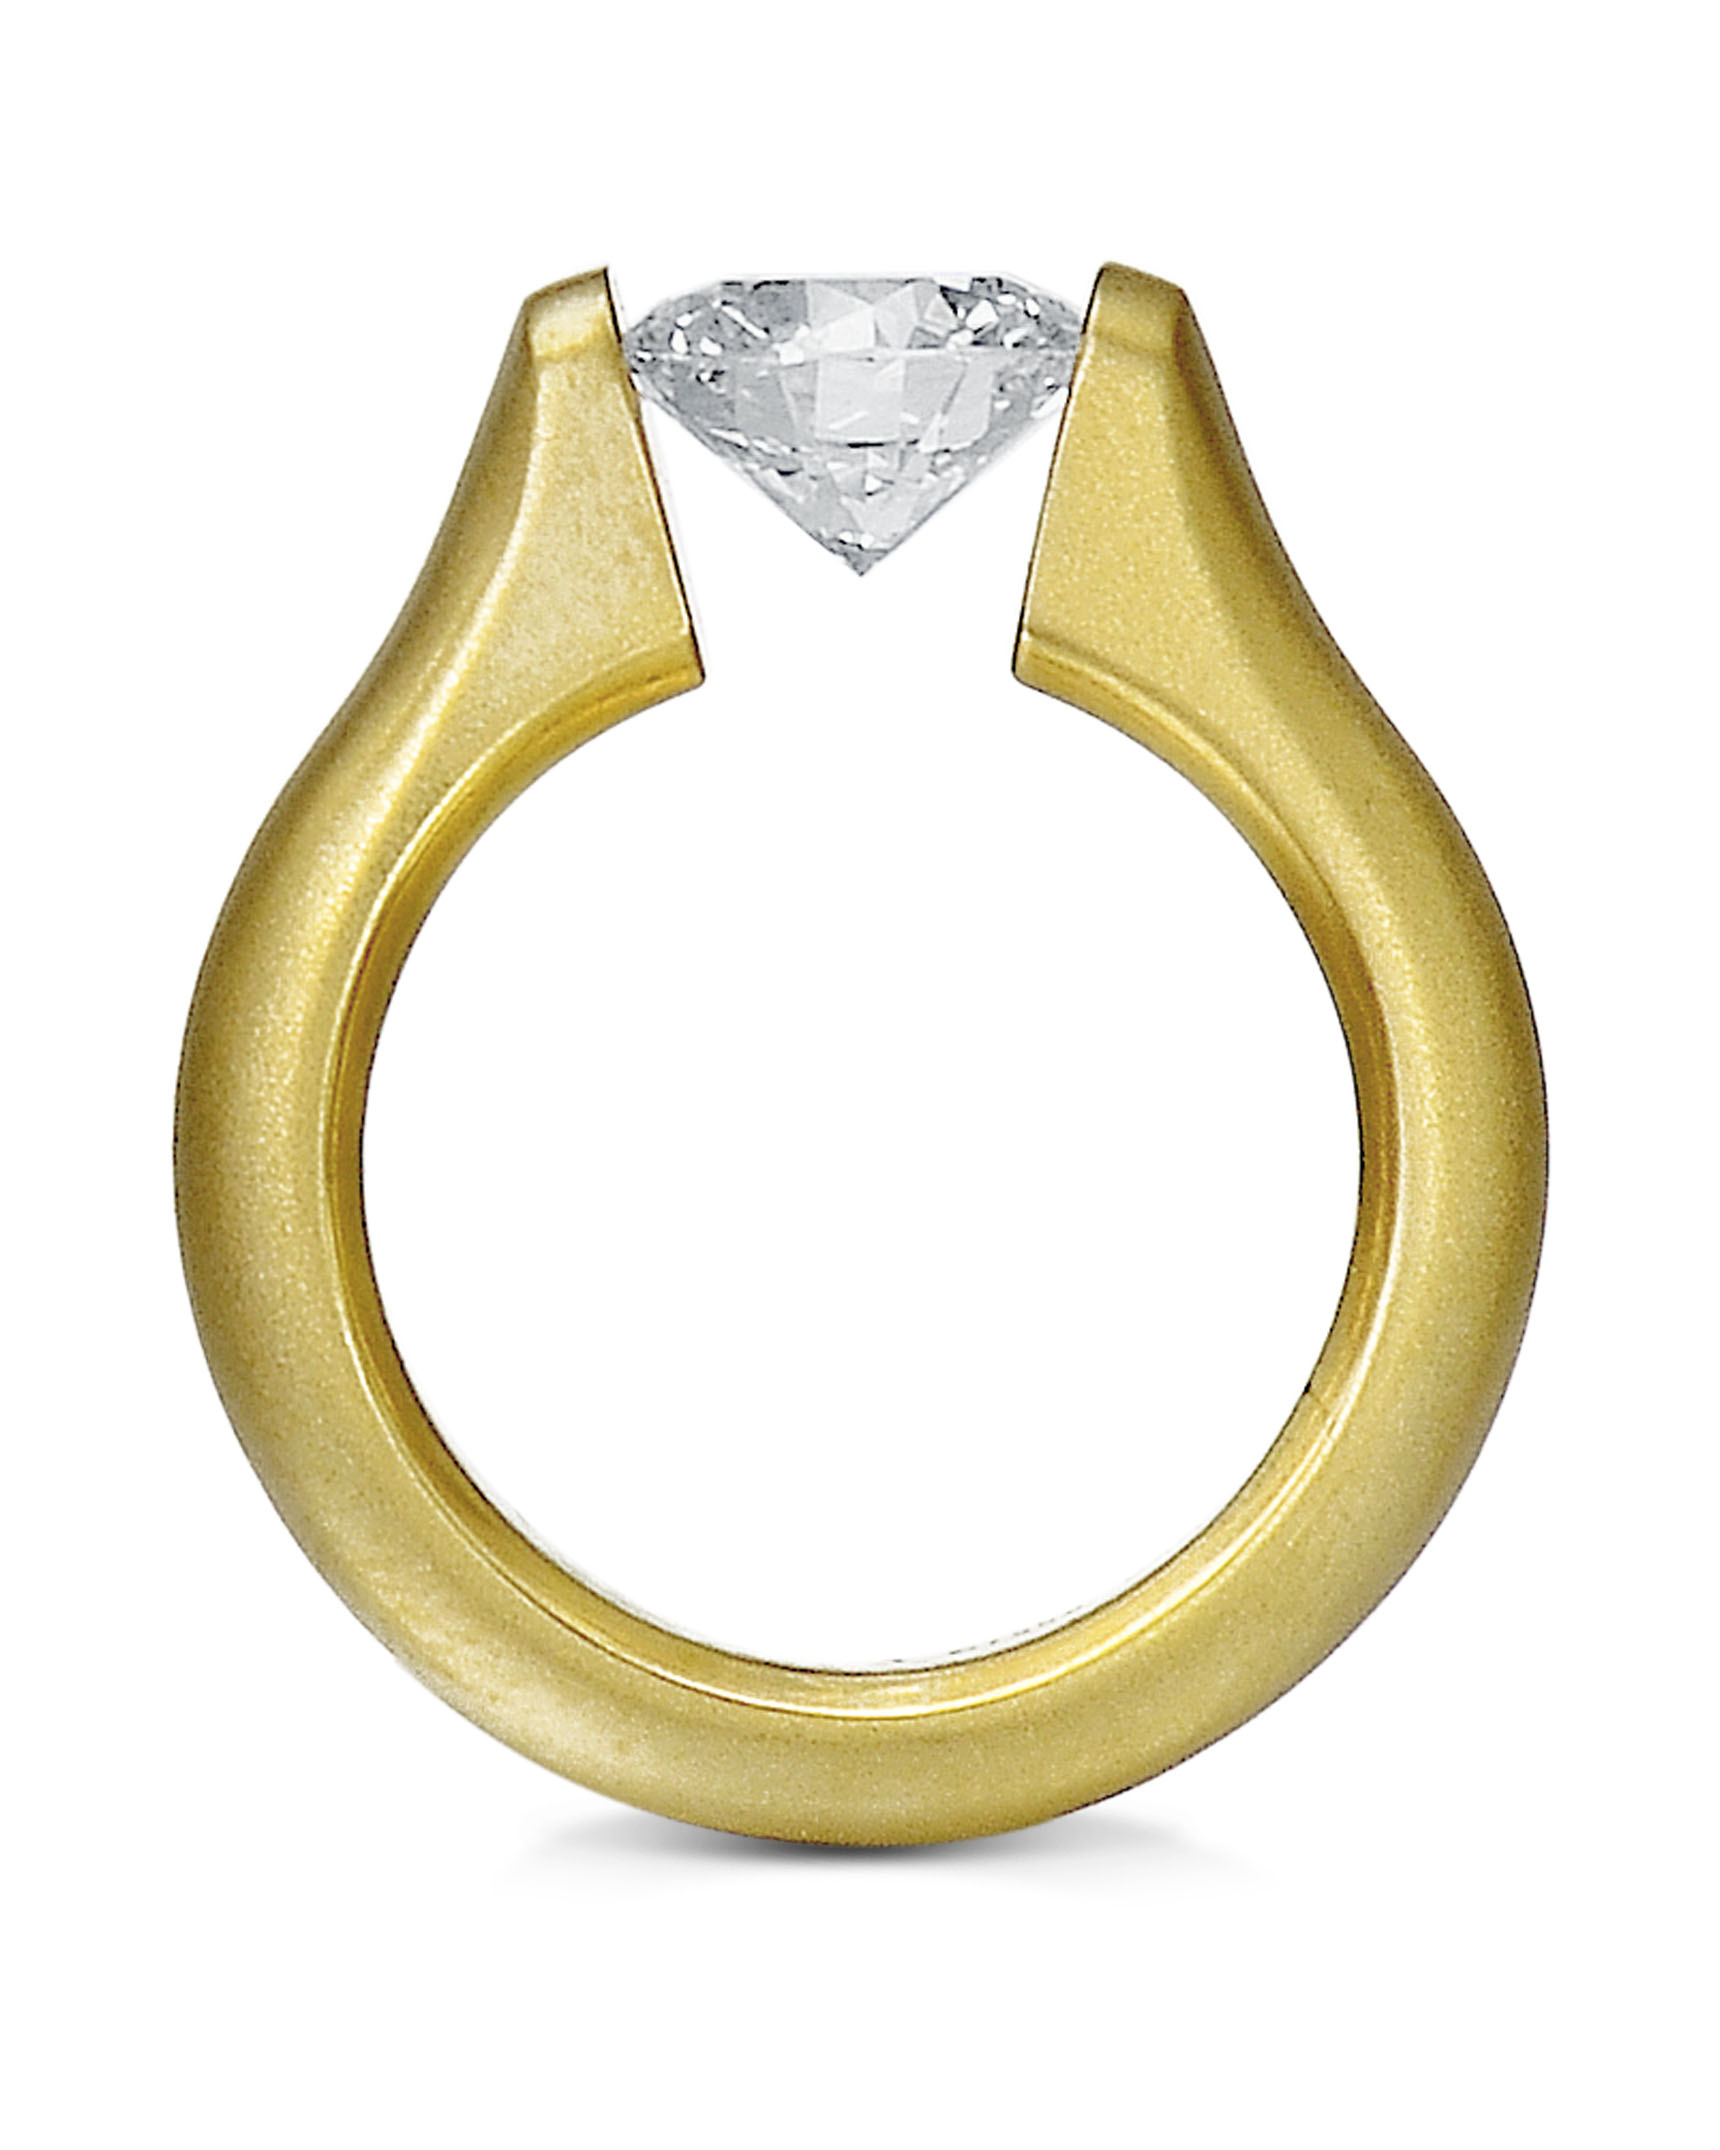 Oval Diamond Omega Tension Set Ring - Turgeon Raine